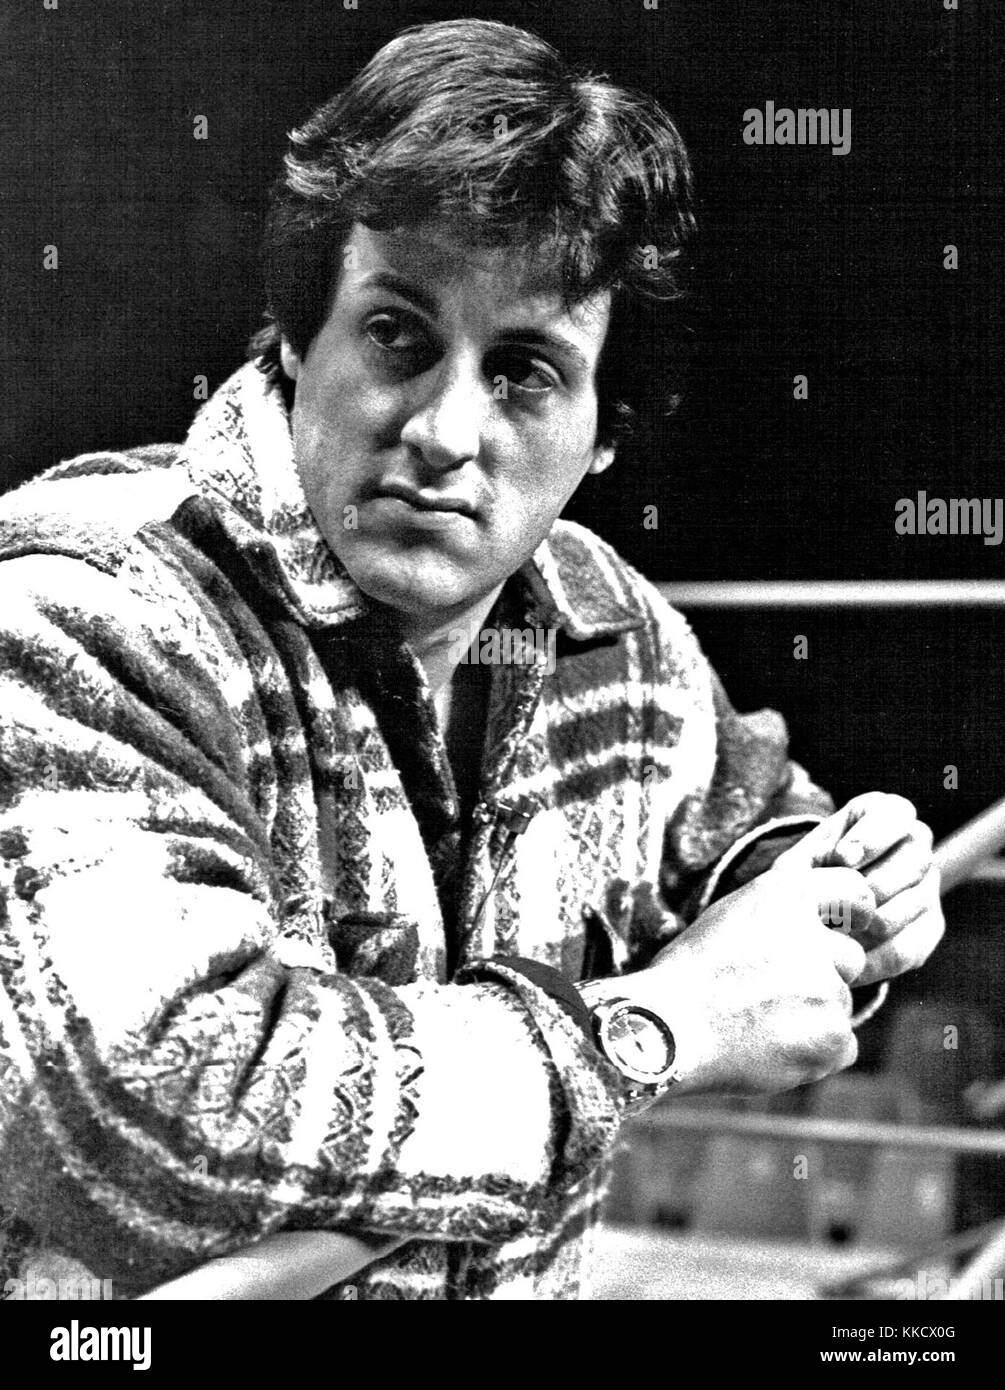 Sylvester Stallone - 1977 Stock Photo